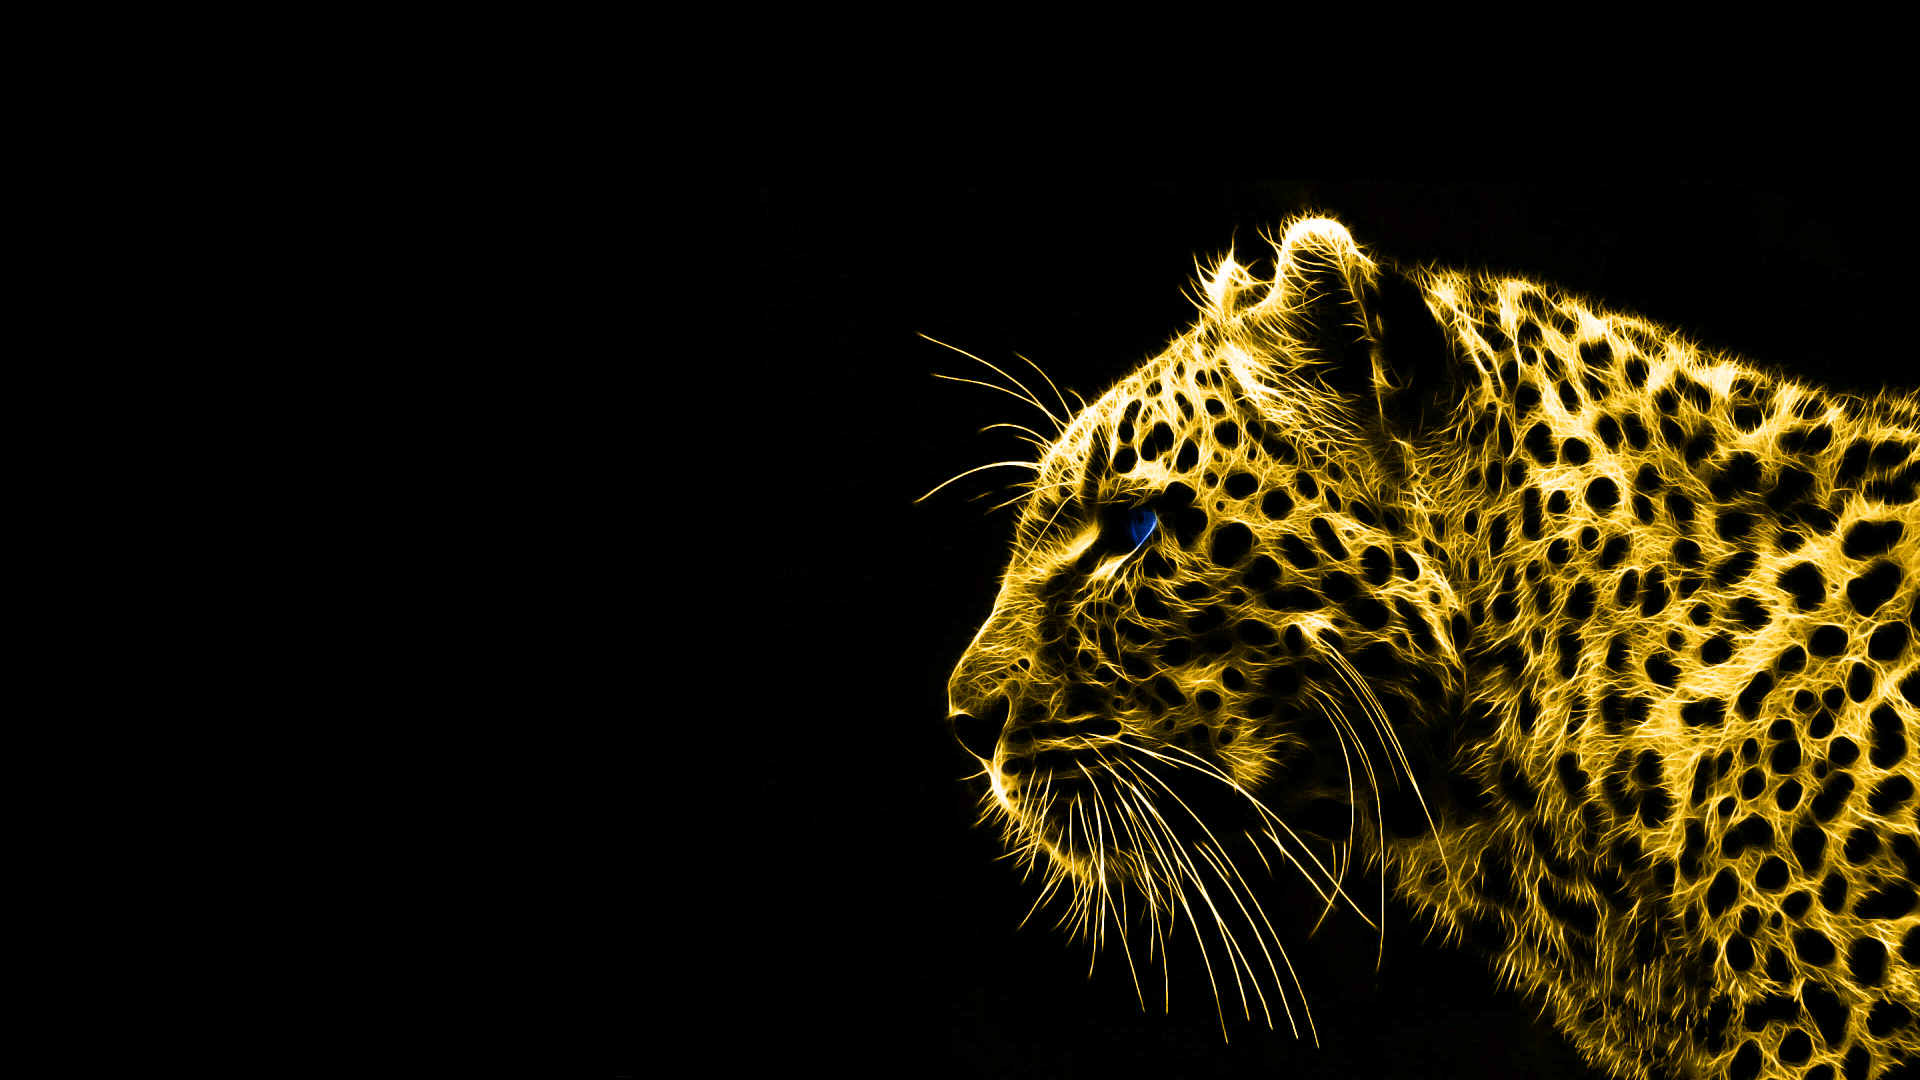 animals gold spirit leopards black background HD Wallpaper